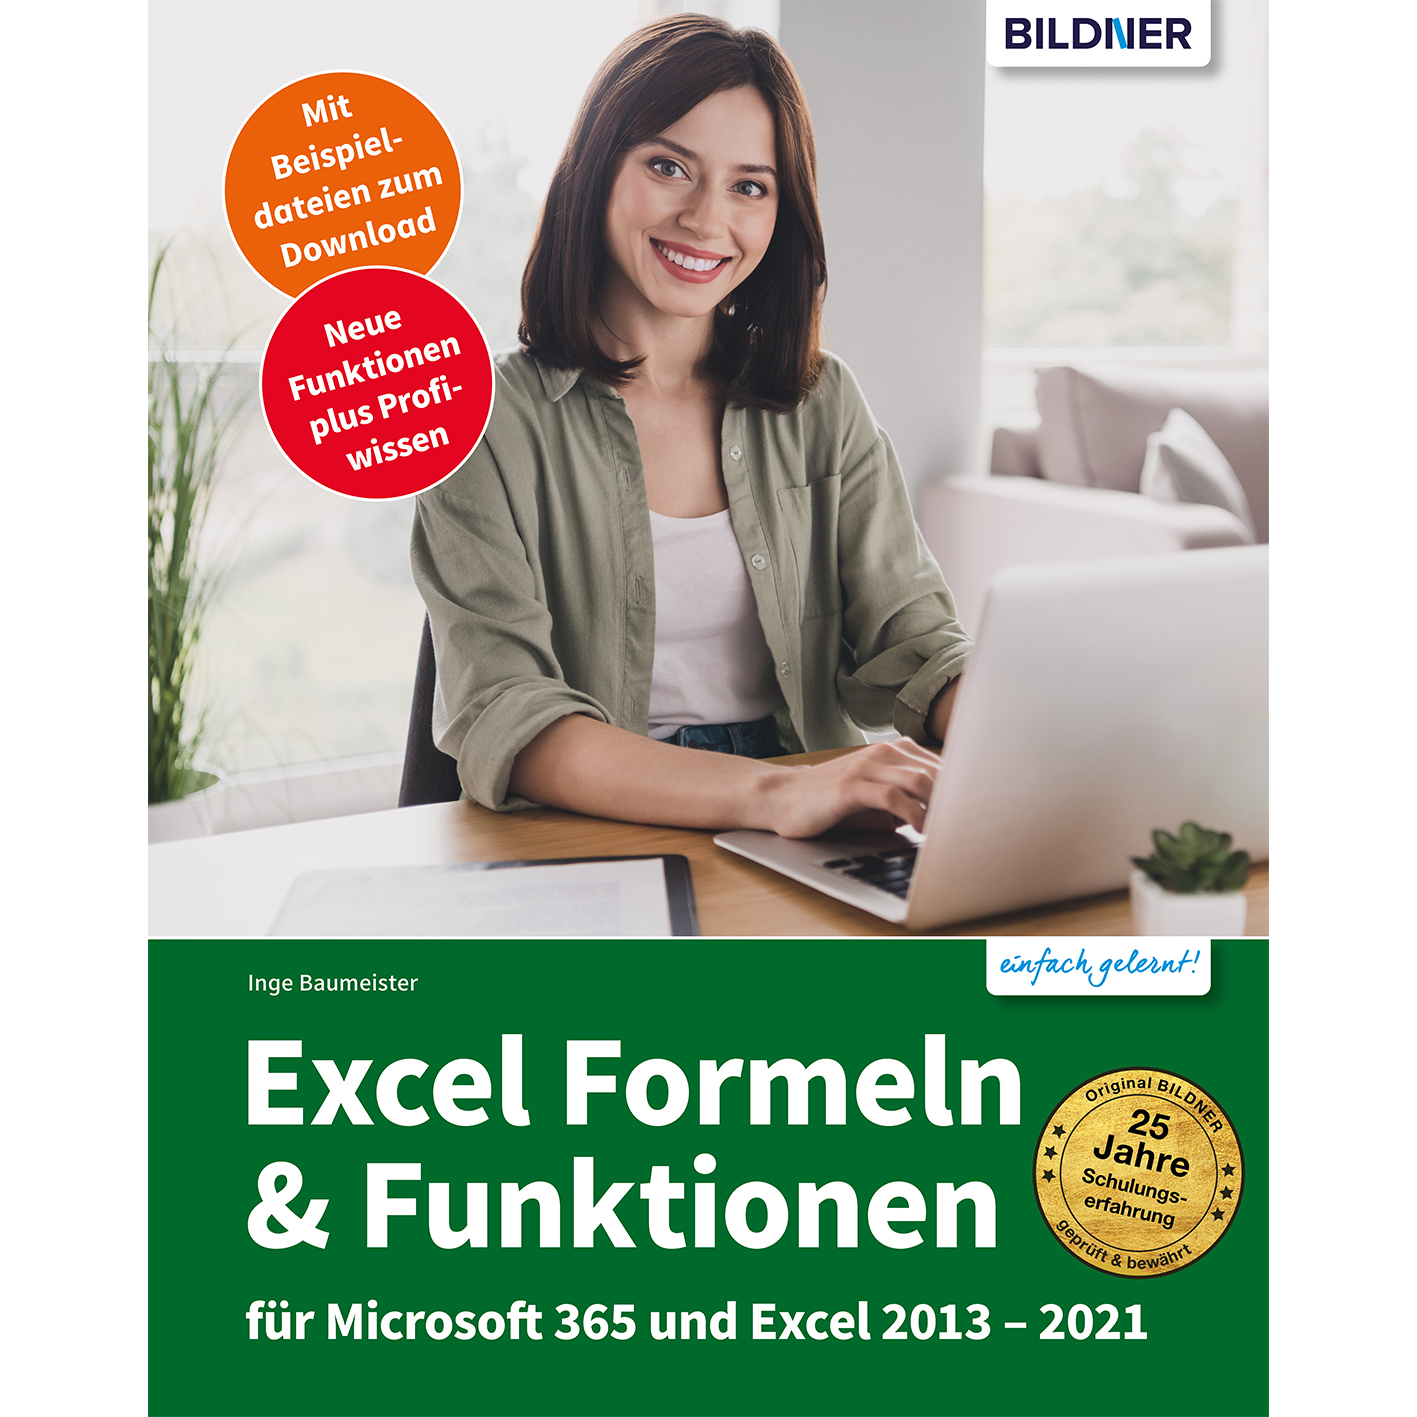 Excel Formeln & Microsoft Excel und Funktionen 365 2013-2021 für